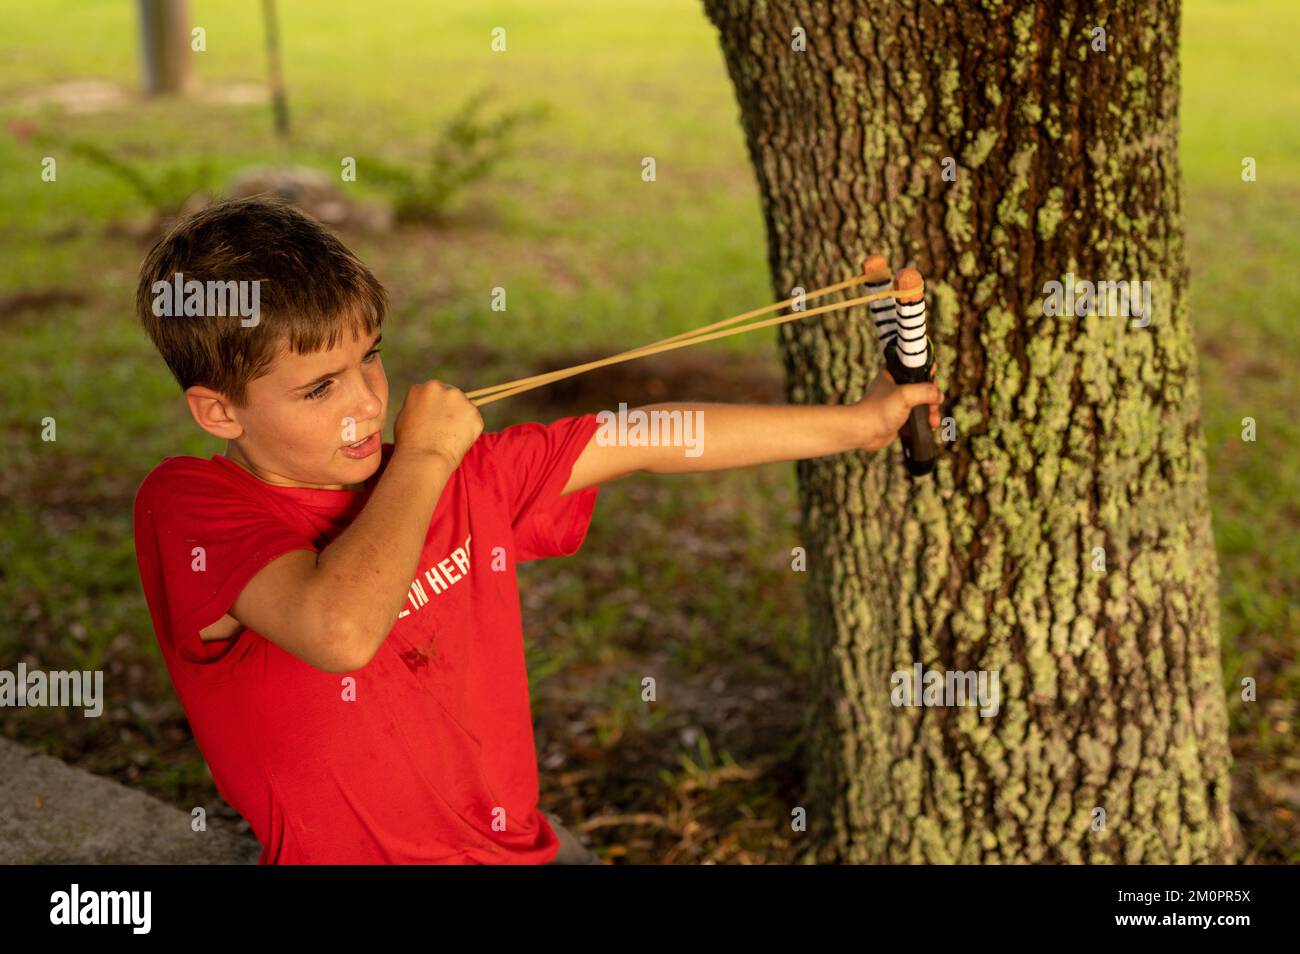 Un niño disparando un tirón cerca de un árbol Foto de stock